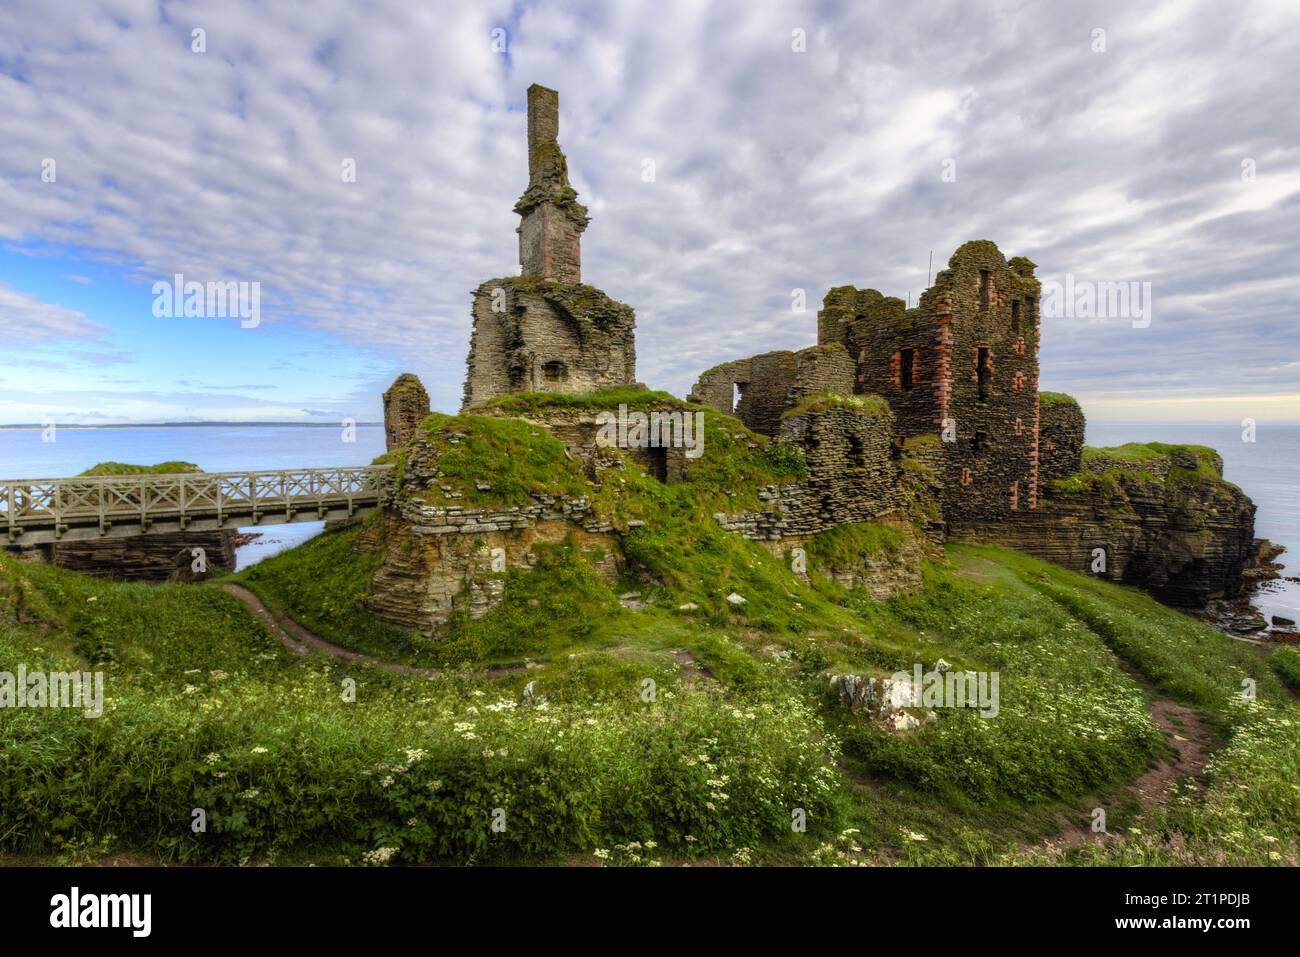 Castle Sinclair Girnigoe est un château en ruine situé sur une falaise surplombant la ville de Wick à Caithness, en Écosse. Banque D'Images